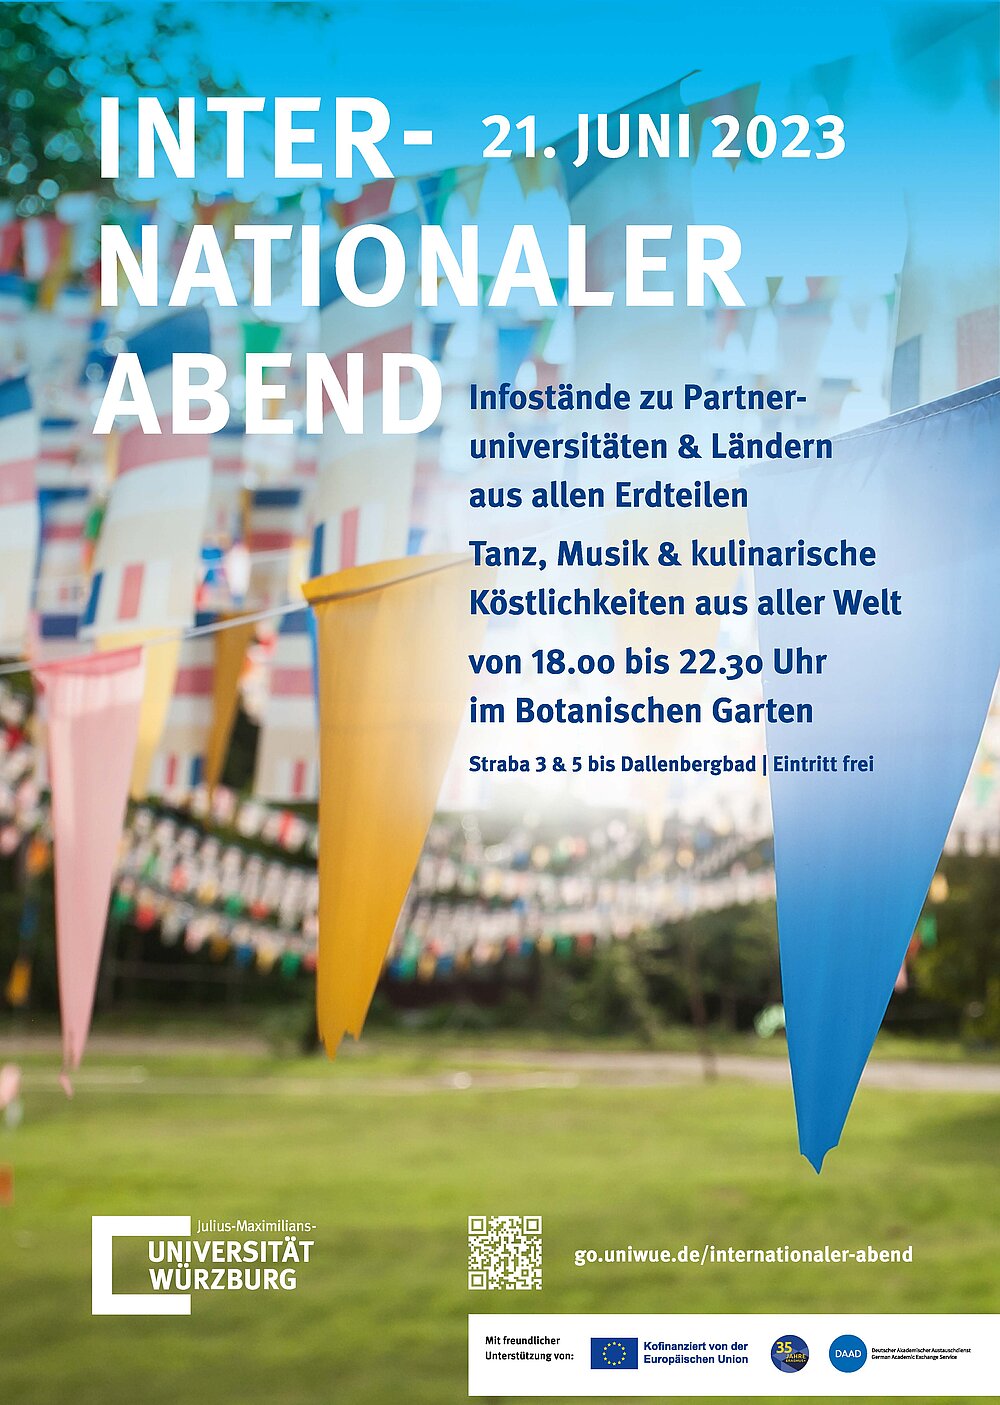 Informationsplakat zum Internationalen Abend am 21.06.2023, 18-22:30 Uhr, Botanischer Garten der JMU Würzburg, Tanz und Musik, Informationsstände zu Auslandsaufenthalten, und vieles mehr